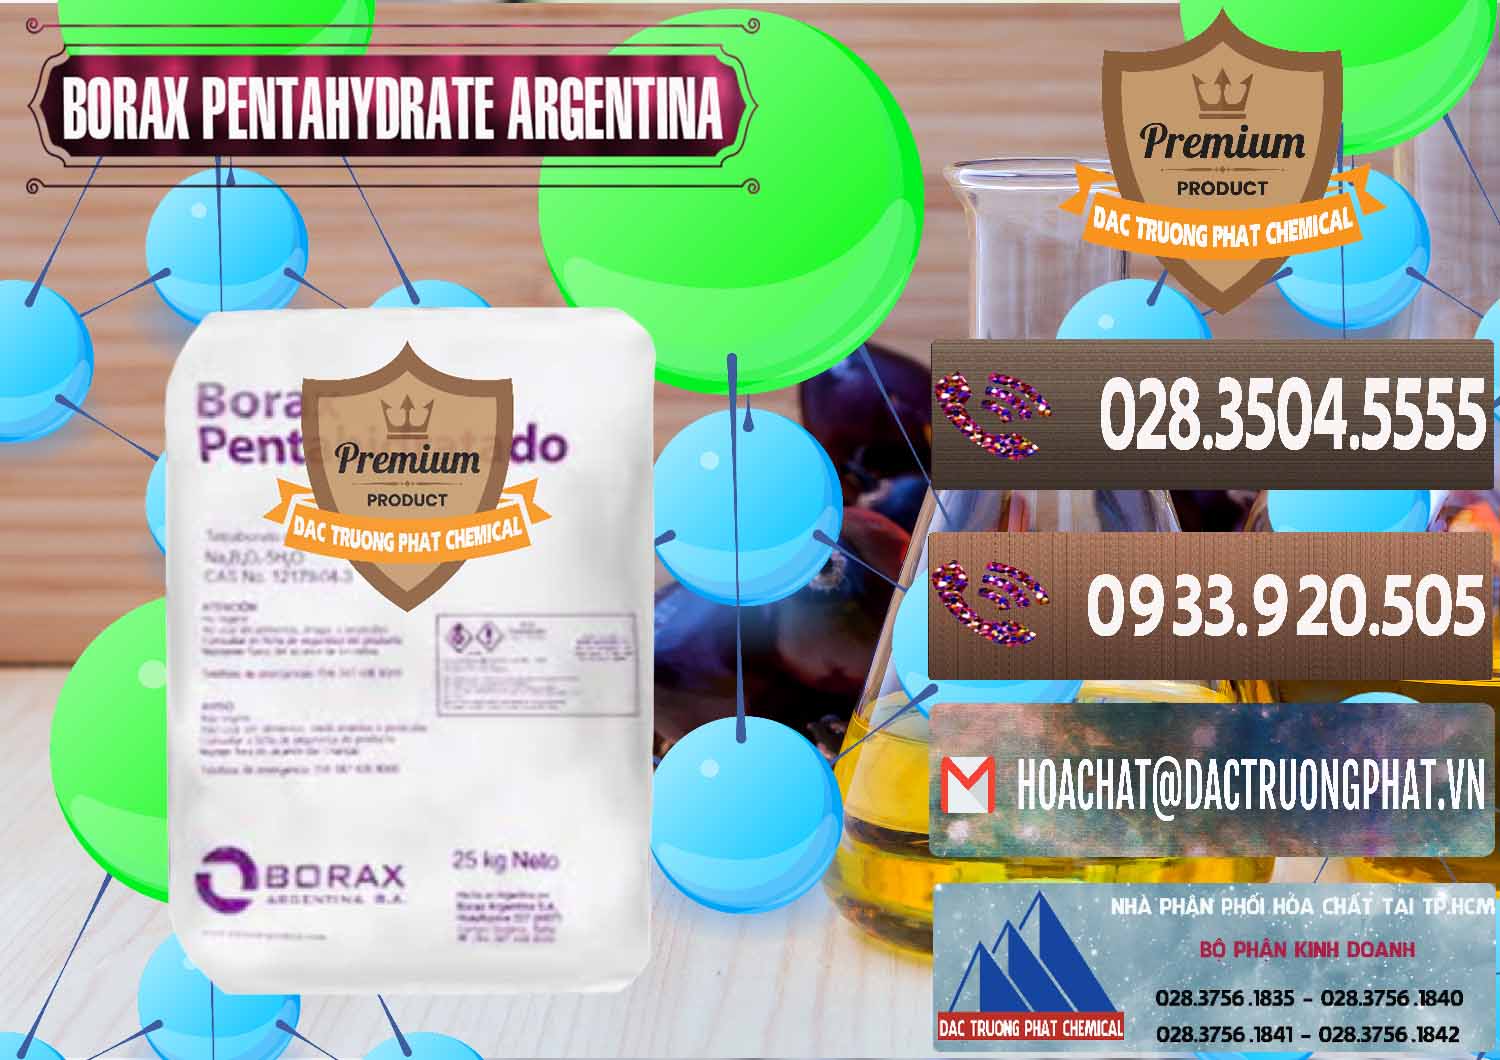 Đơn vị chuyên cung ứng và bán Borax Pentahydrate Argentina - 0447 - Cty chuyên cung ứng _ phân phối hóa chất tại TP.HCM - hoachatviet.net